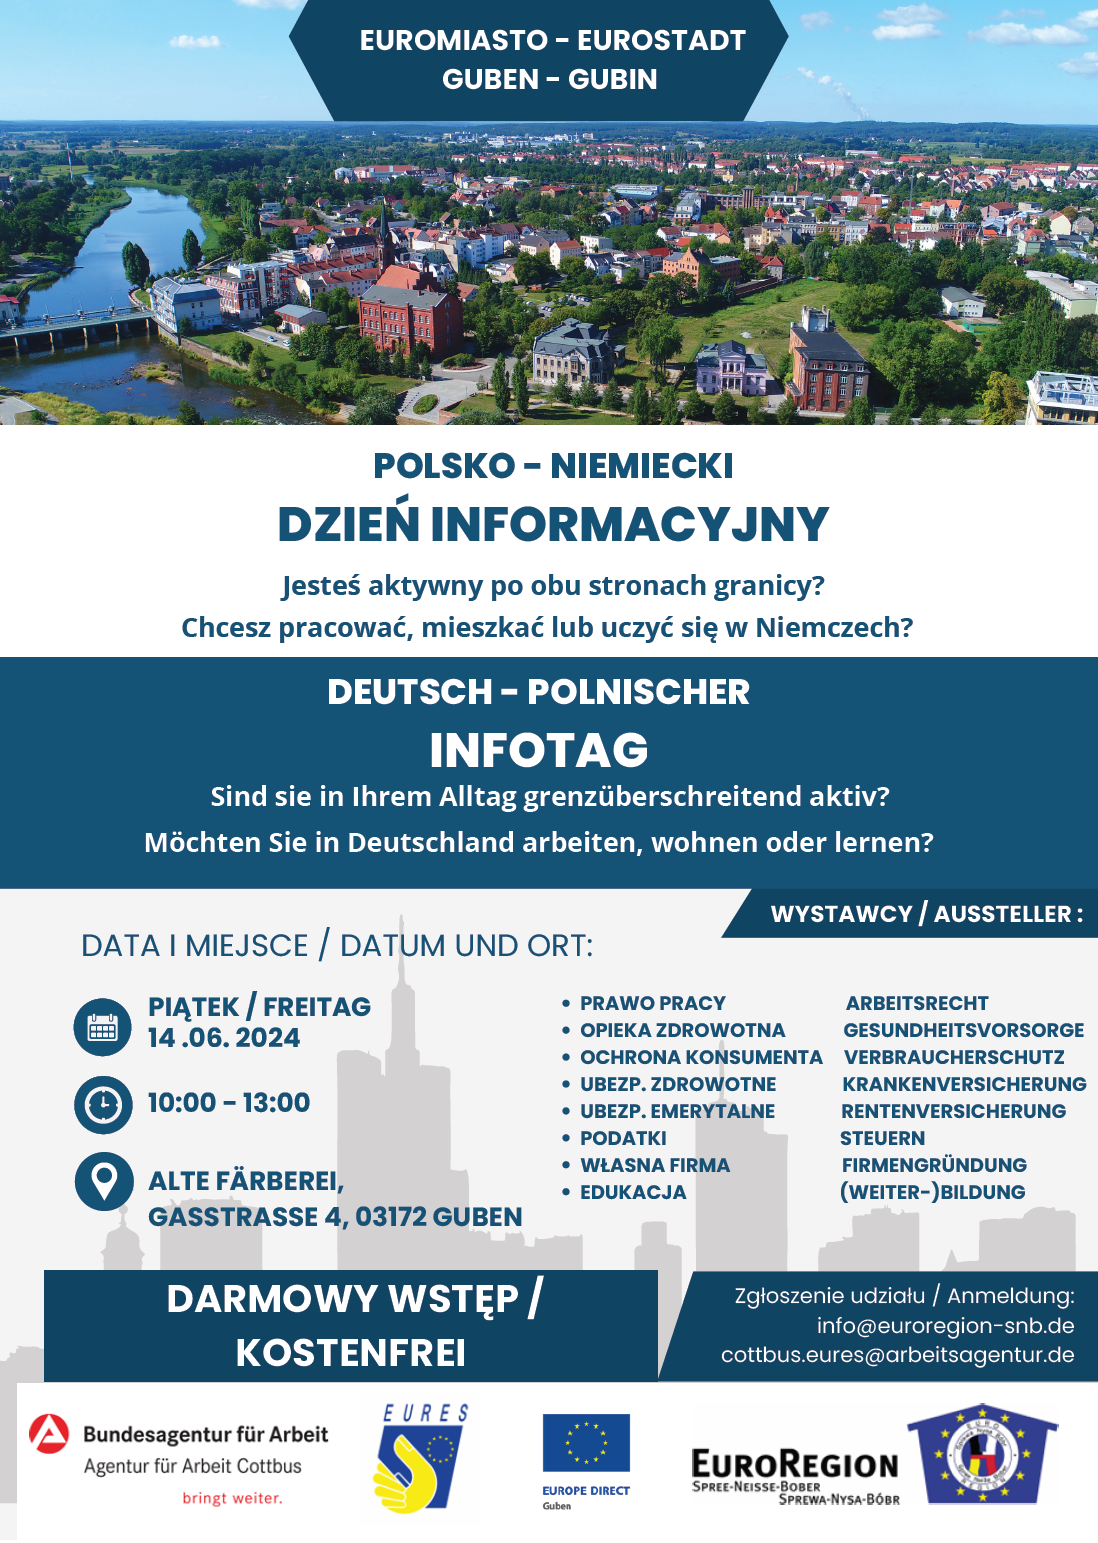 slider.alt.head 14.06.2024 - zapraszamy na Polsko- Niemiecki Dzień Informacyjny w ramach EURES w Guben w Niemczech.